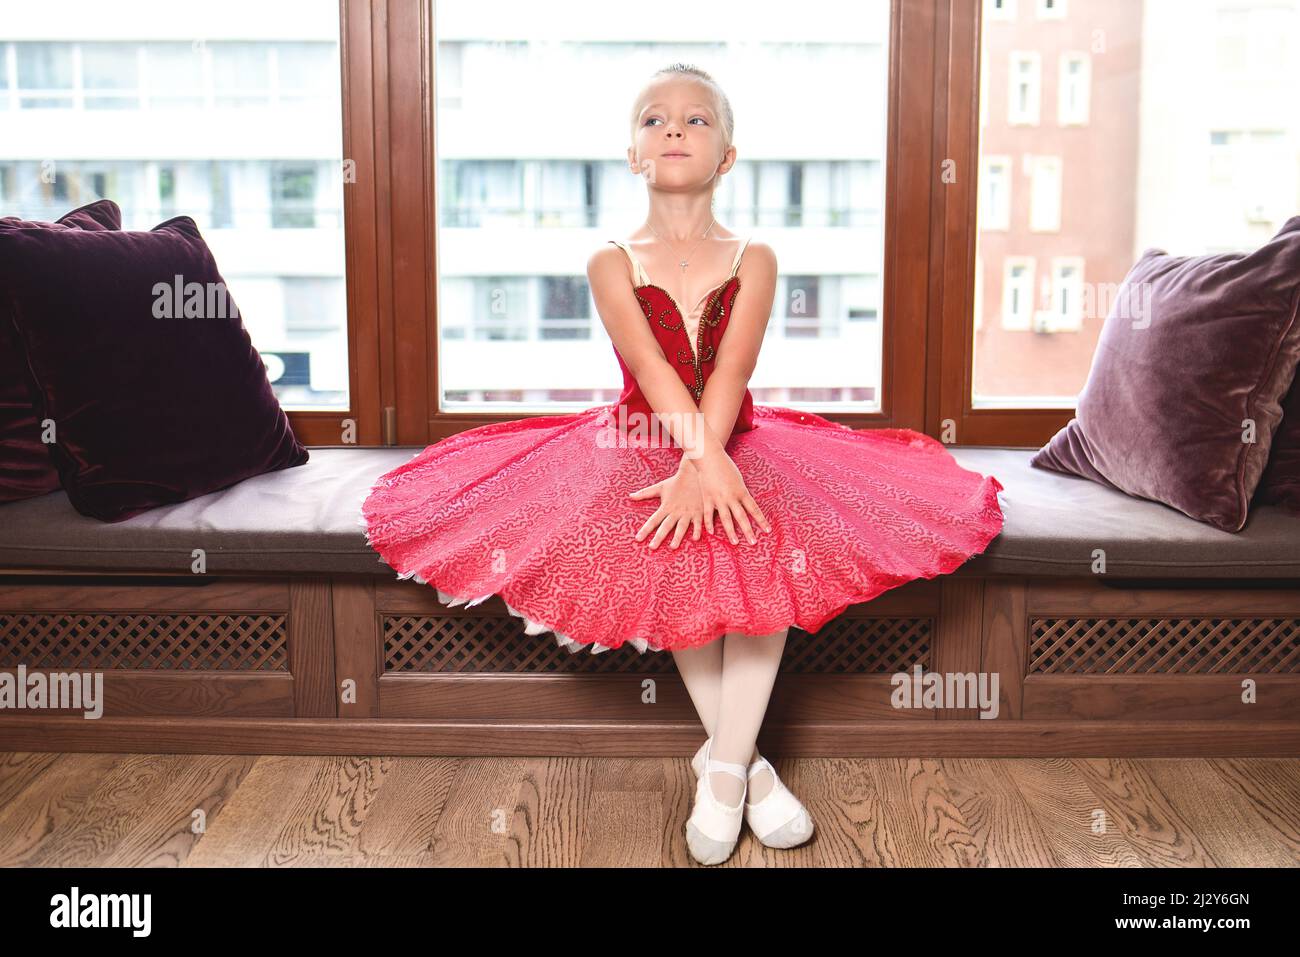 Jeune fille souriante rêvant de devenir danseuse de ballet professionnelle, école de danse classique. La petite ballerine s'étire contre le vent Banque D'Images